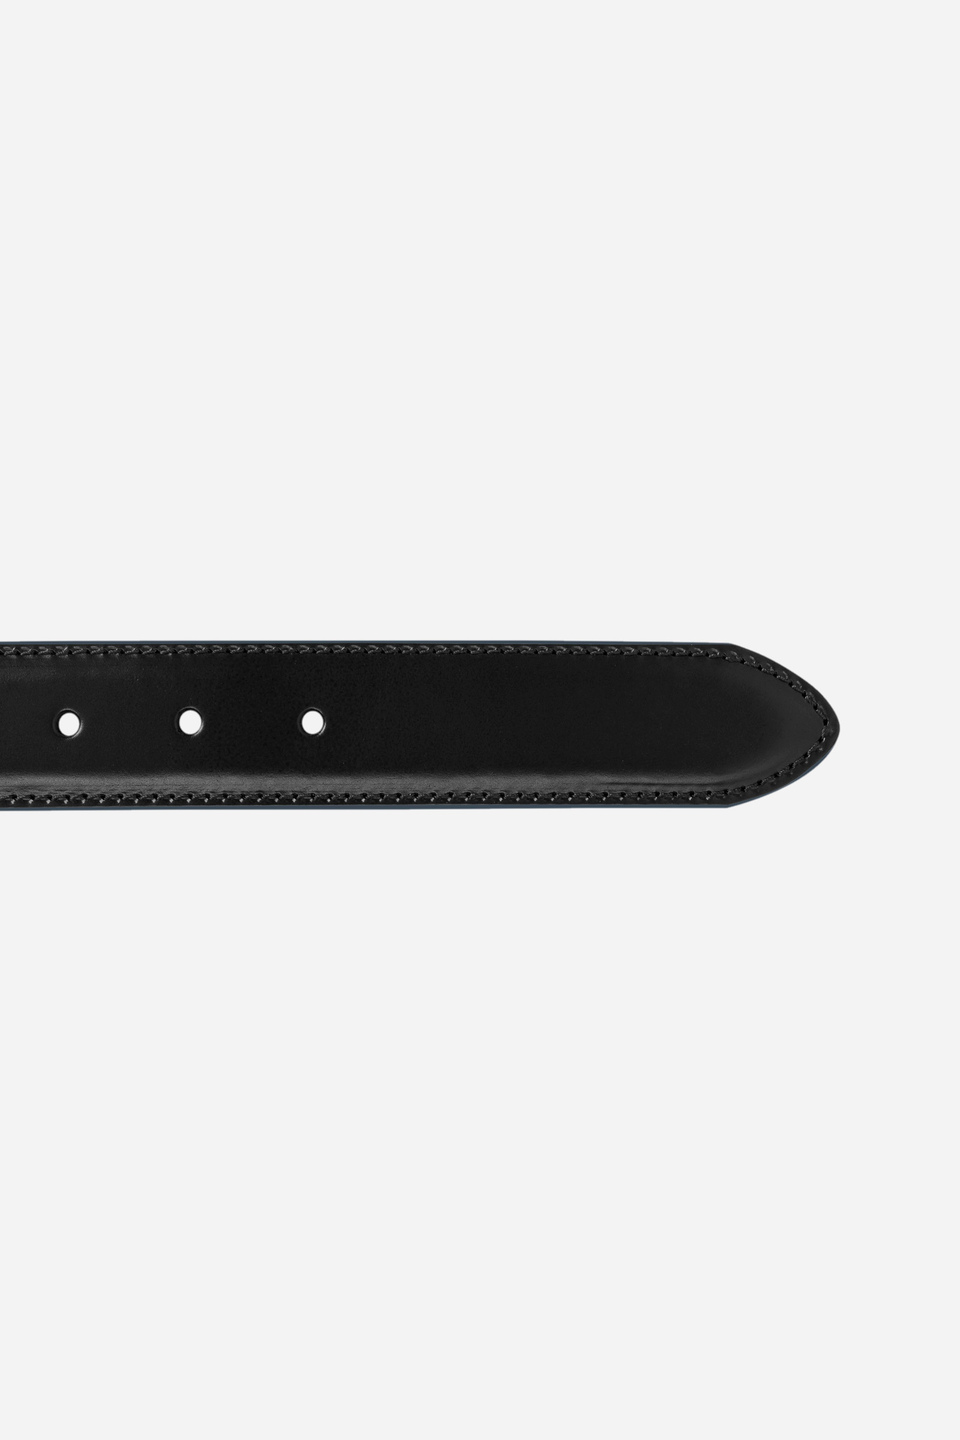 Solid color black leather belt | La Martina - Official Online Shop